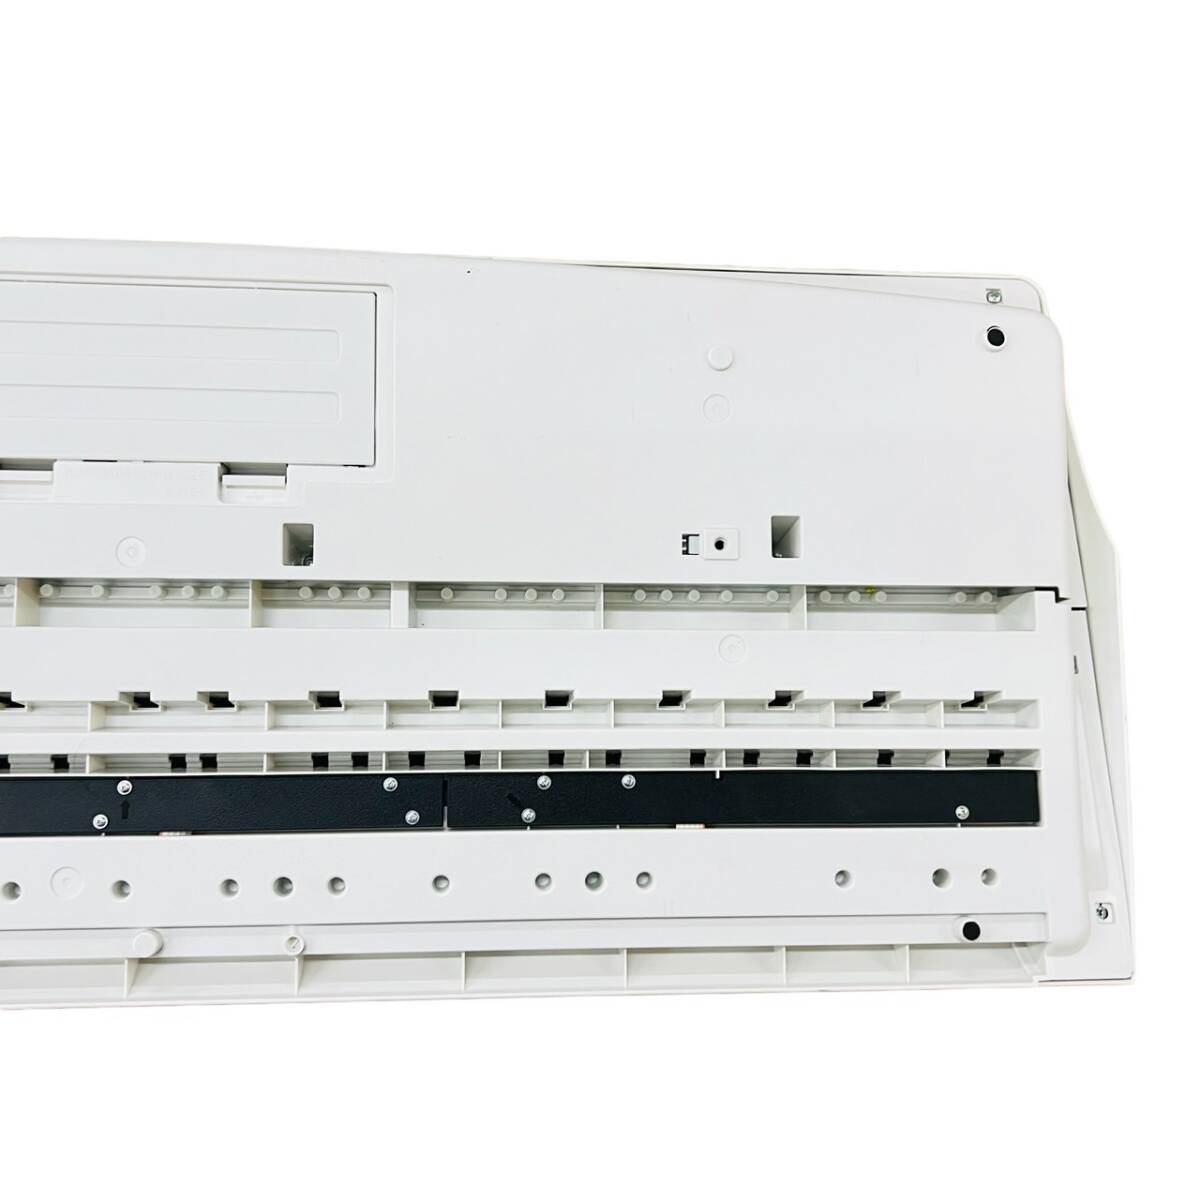 【動作確認済み】CASIO カシオ 光ナビゲーションキーボード　LK-208 61鍵 本体のみ